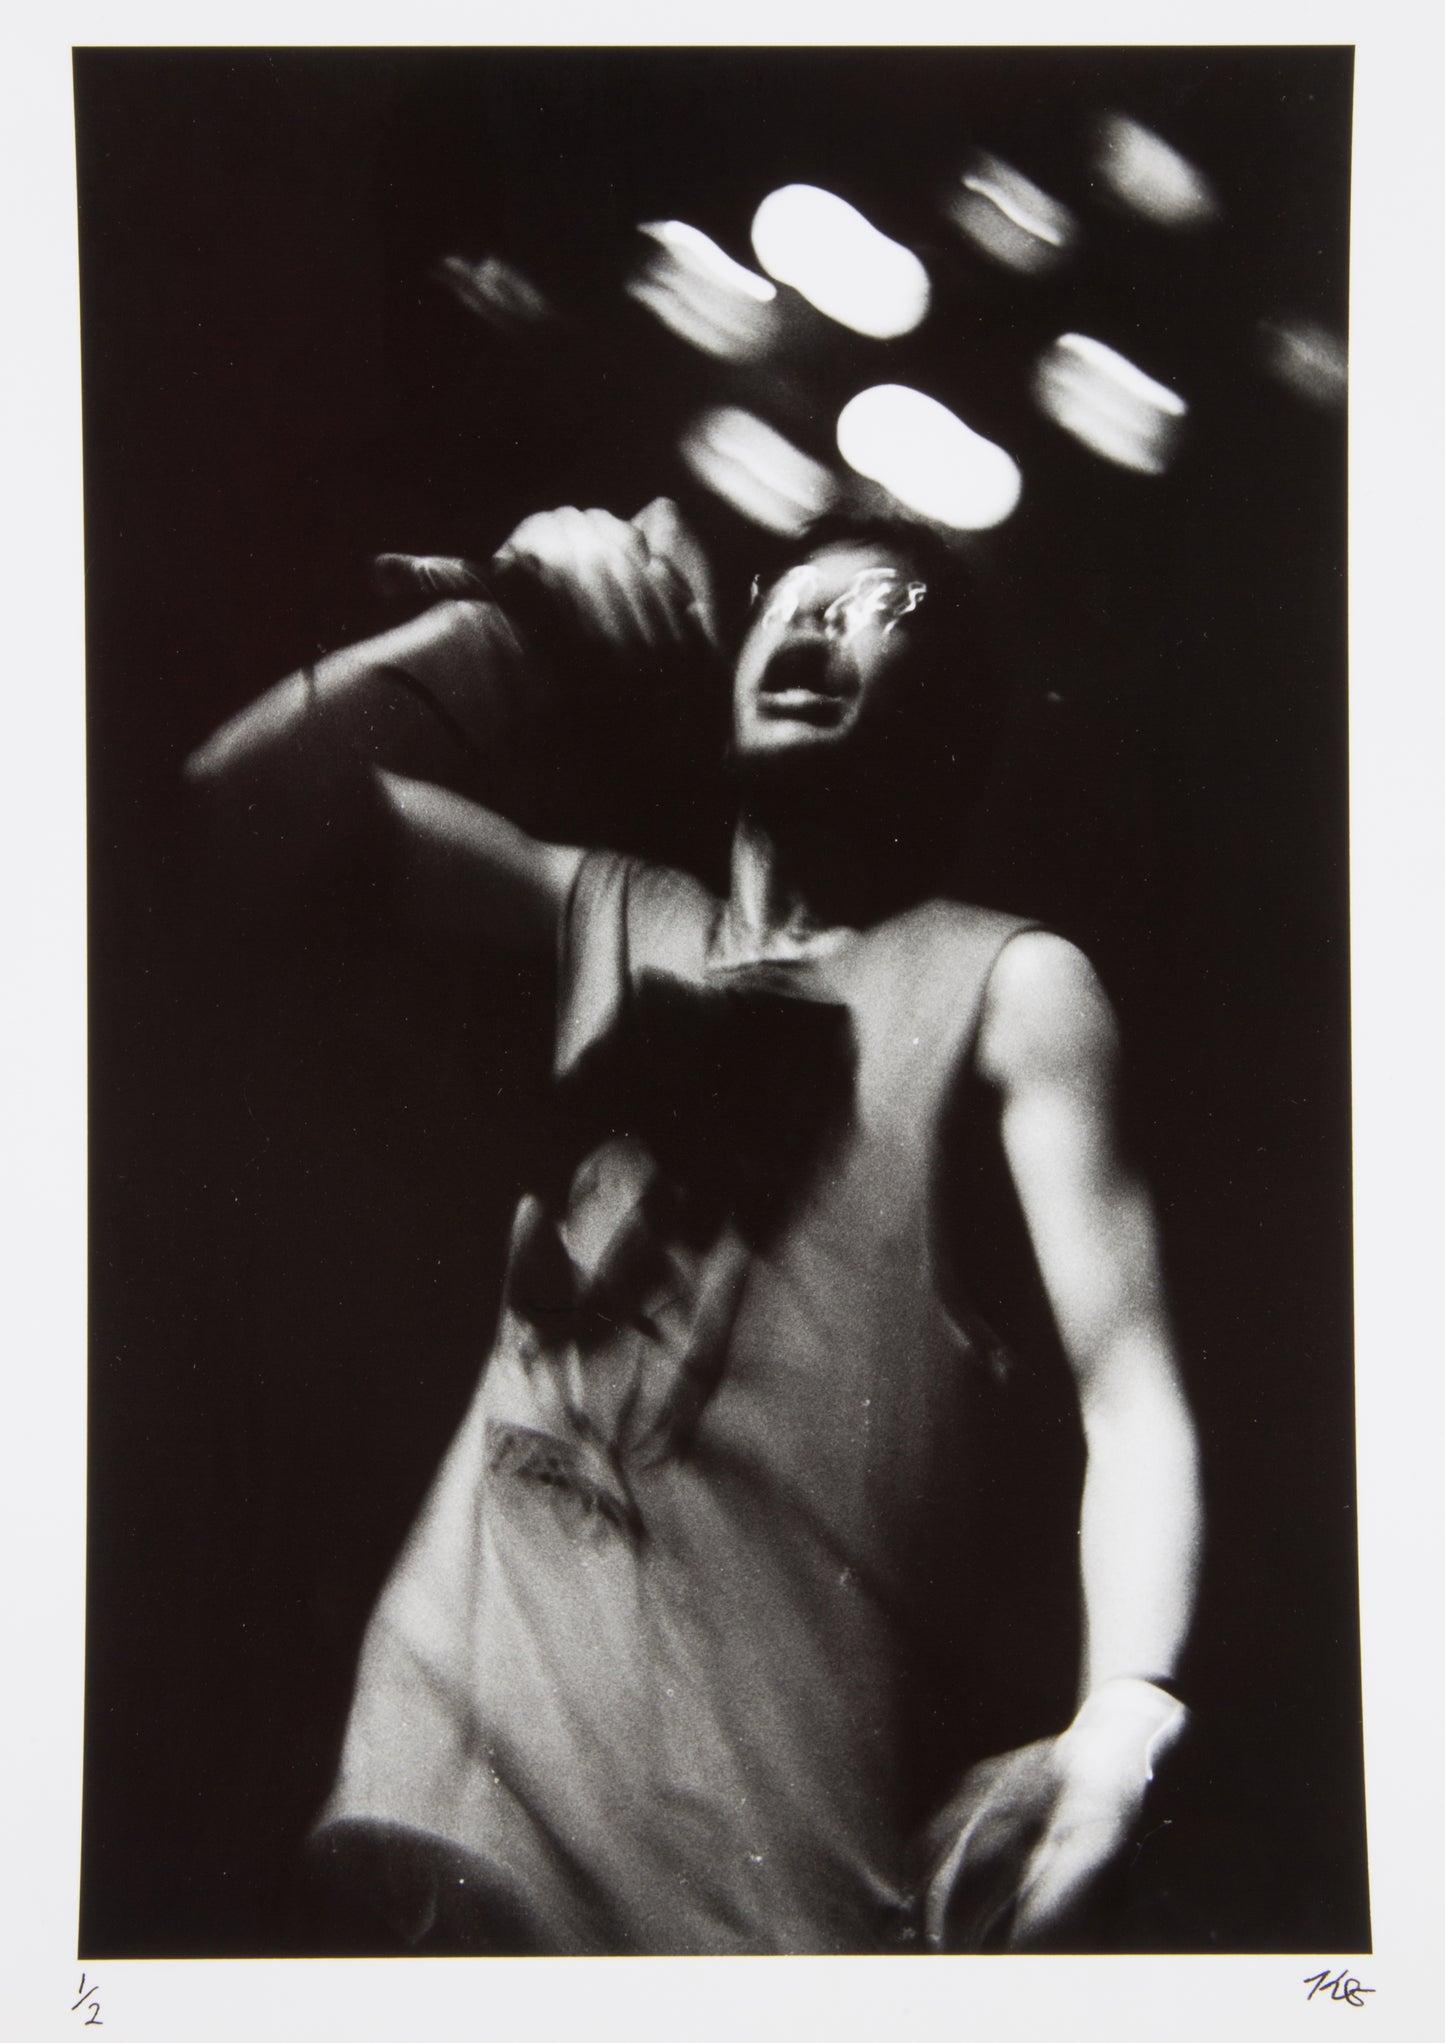 Kristen Grundy "Subhumans" Photo Print (1997/98)